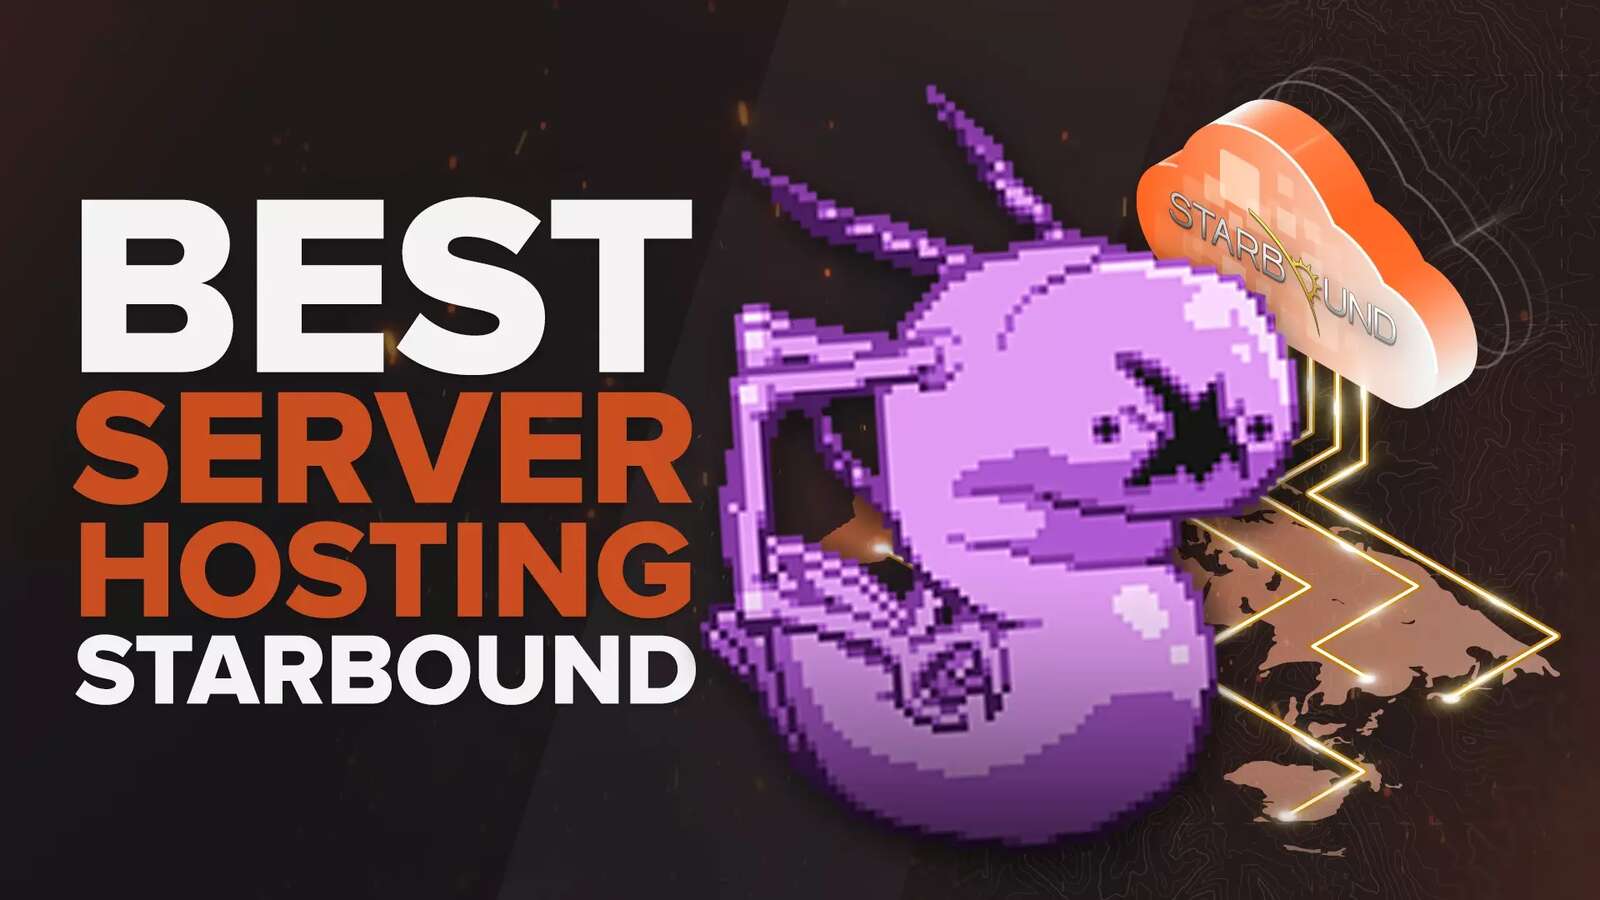 Best Starbound Server Hosting Service [All Tested]